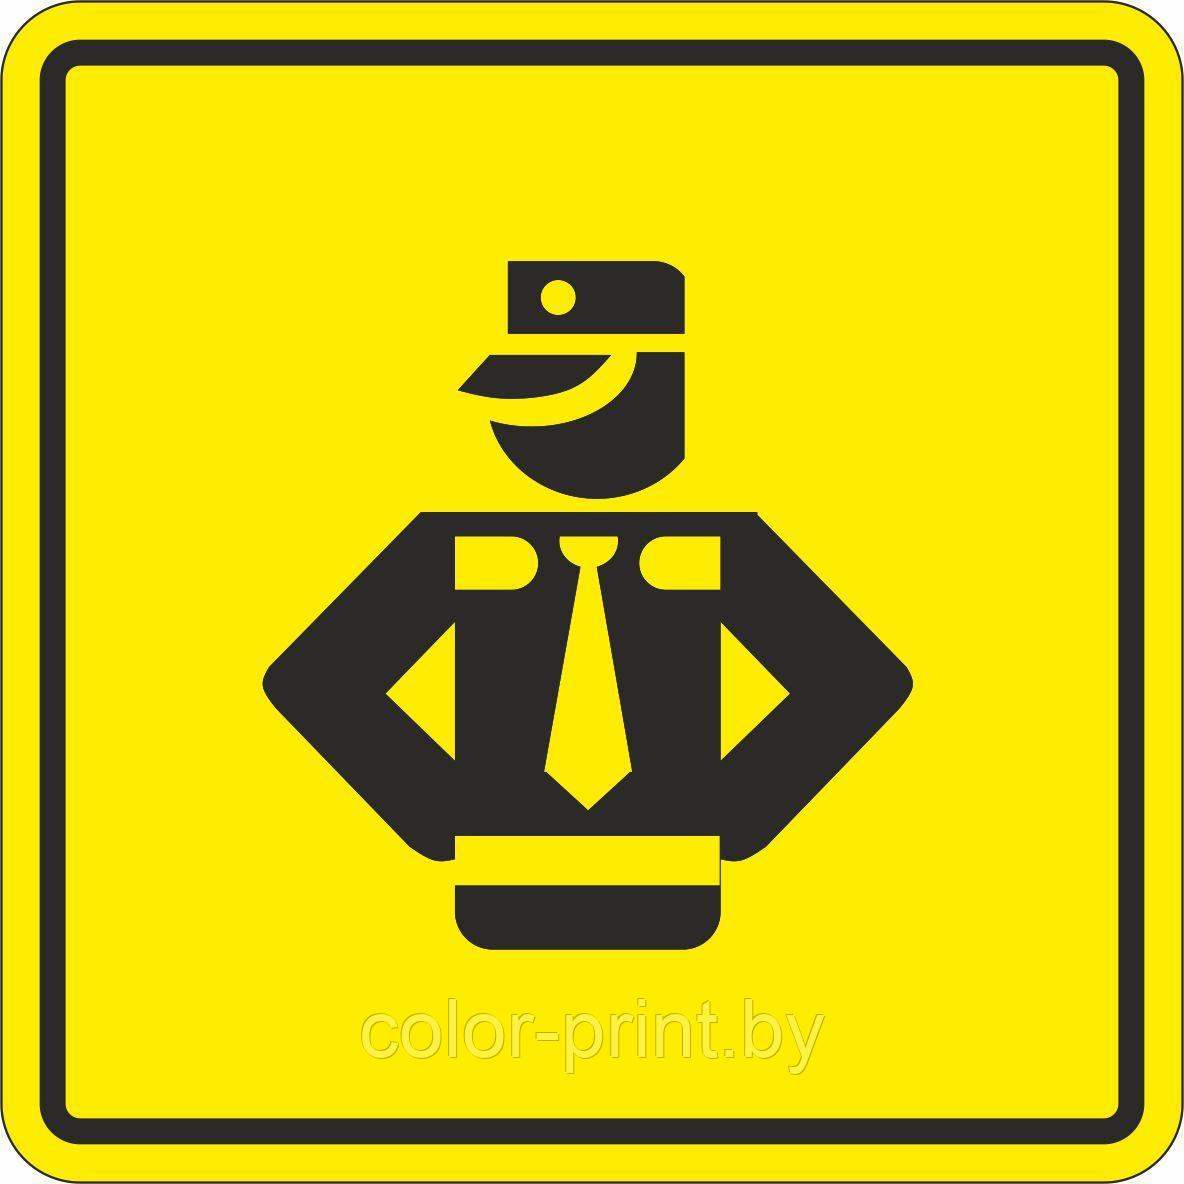 Тактильный знак пиктограмма "Охрана"